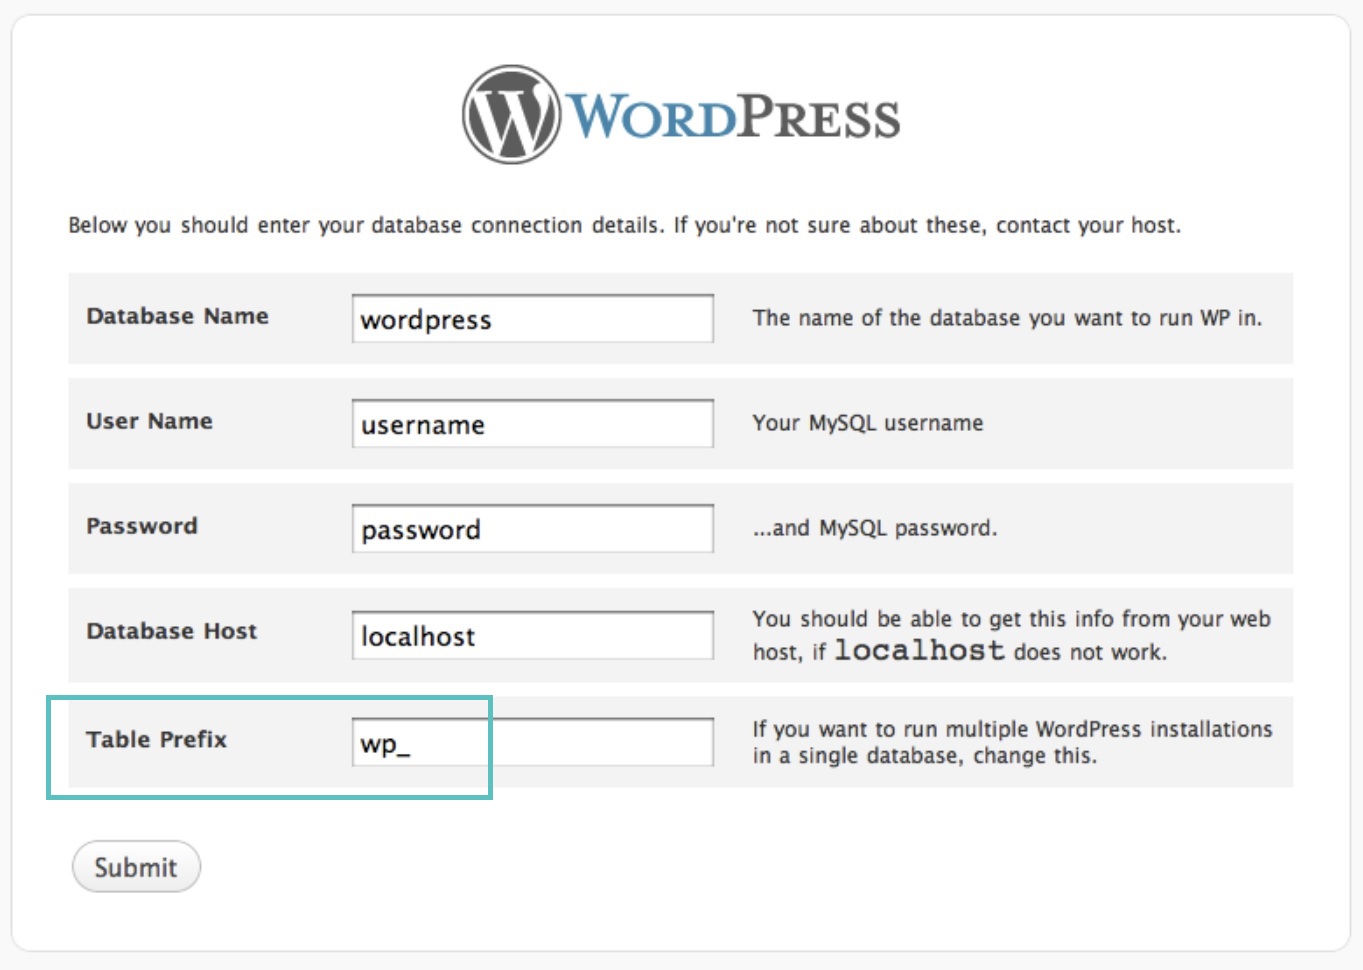 Prefisso tabelle WordPress 